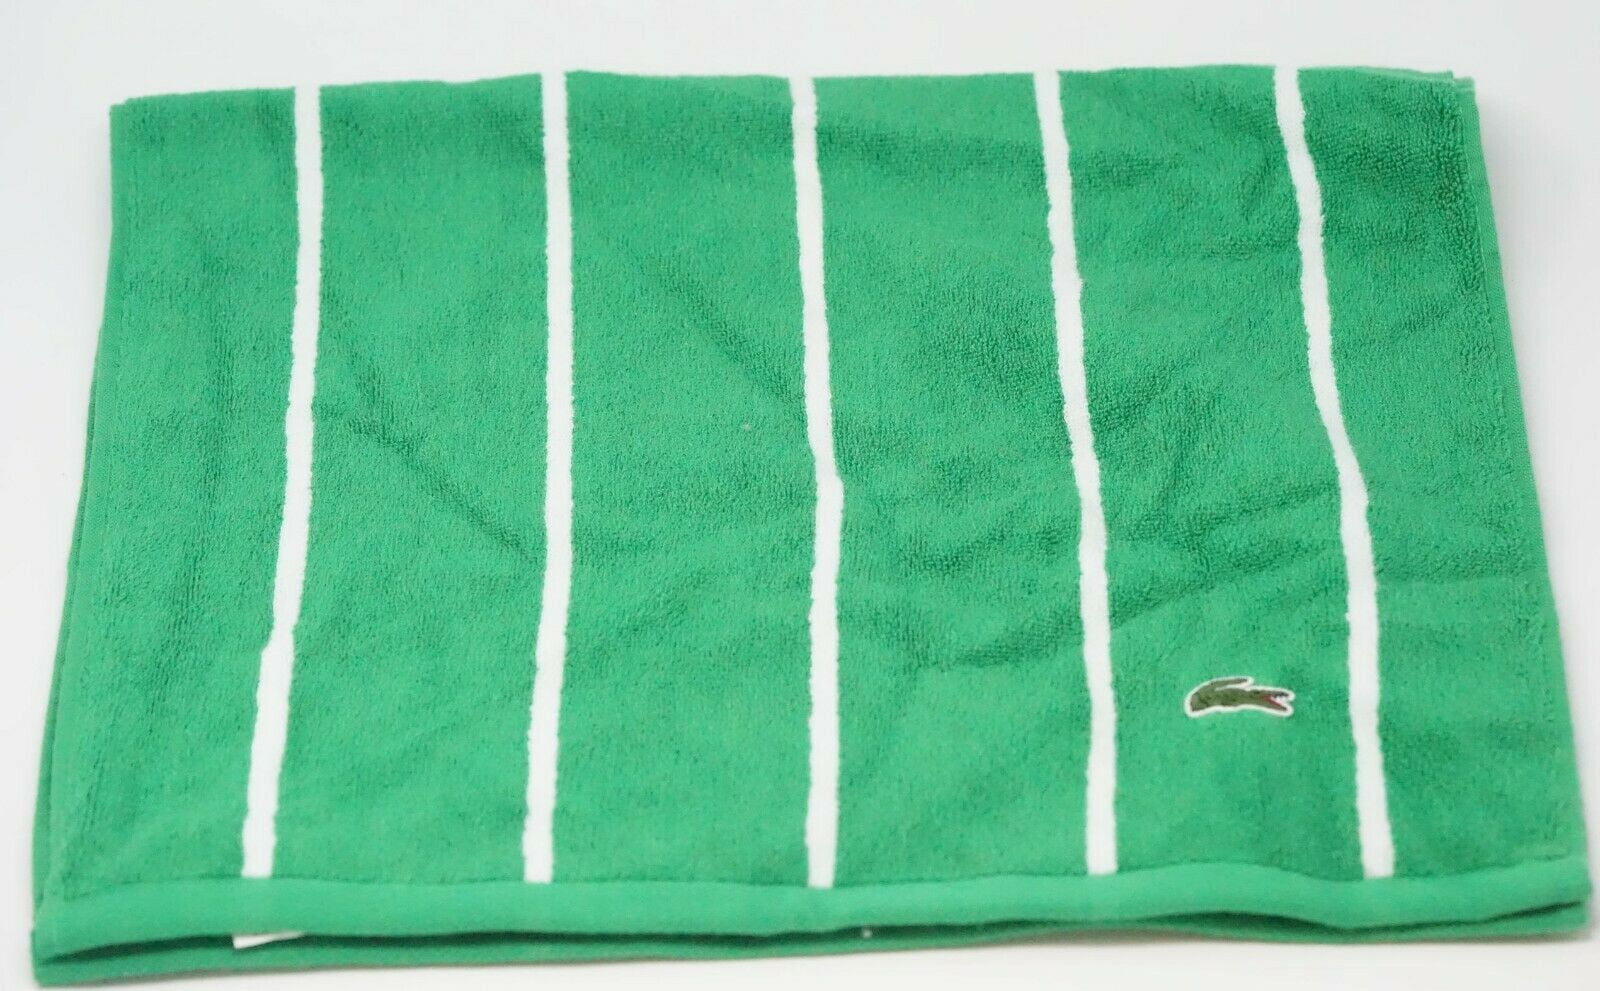 Lacoste Match Bath Towel, 100% Cotton, 600 GSM, 30x52, Cliff